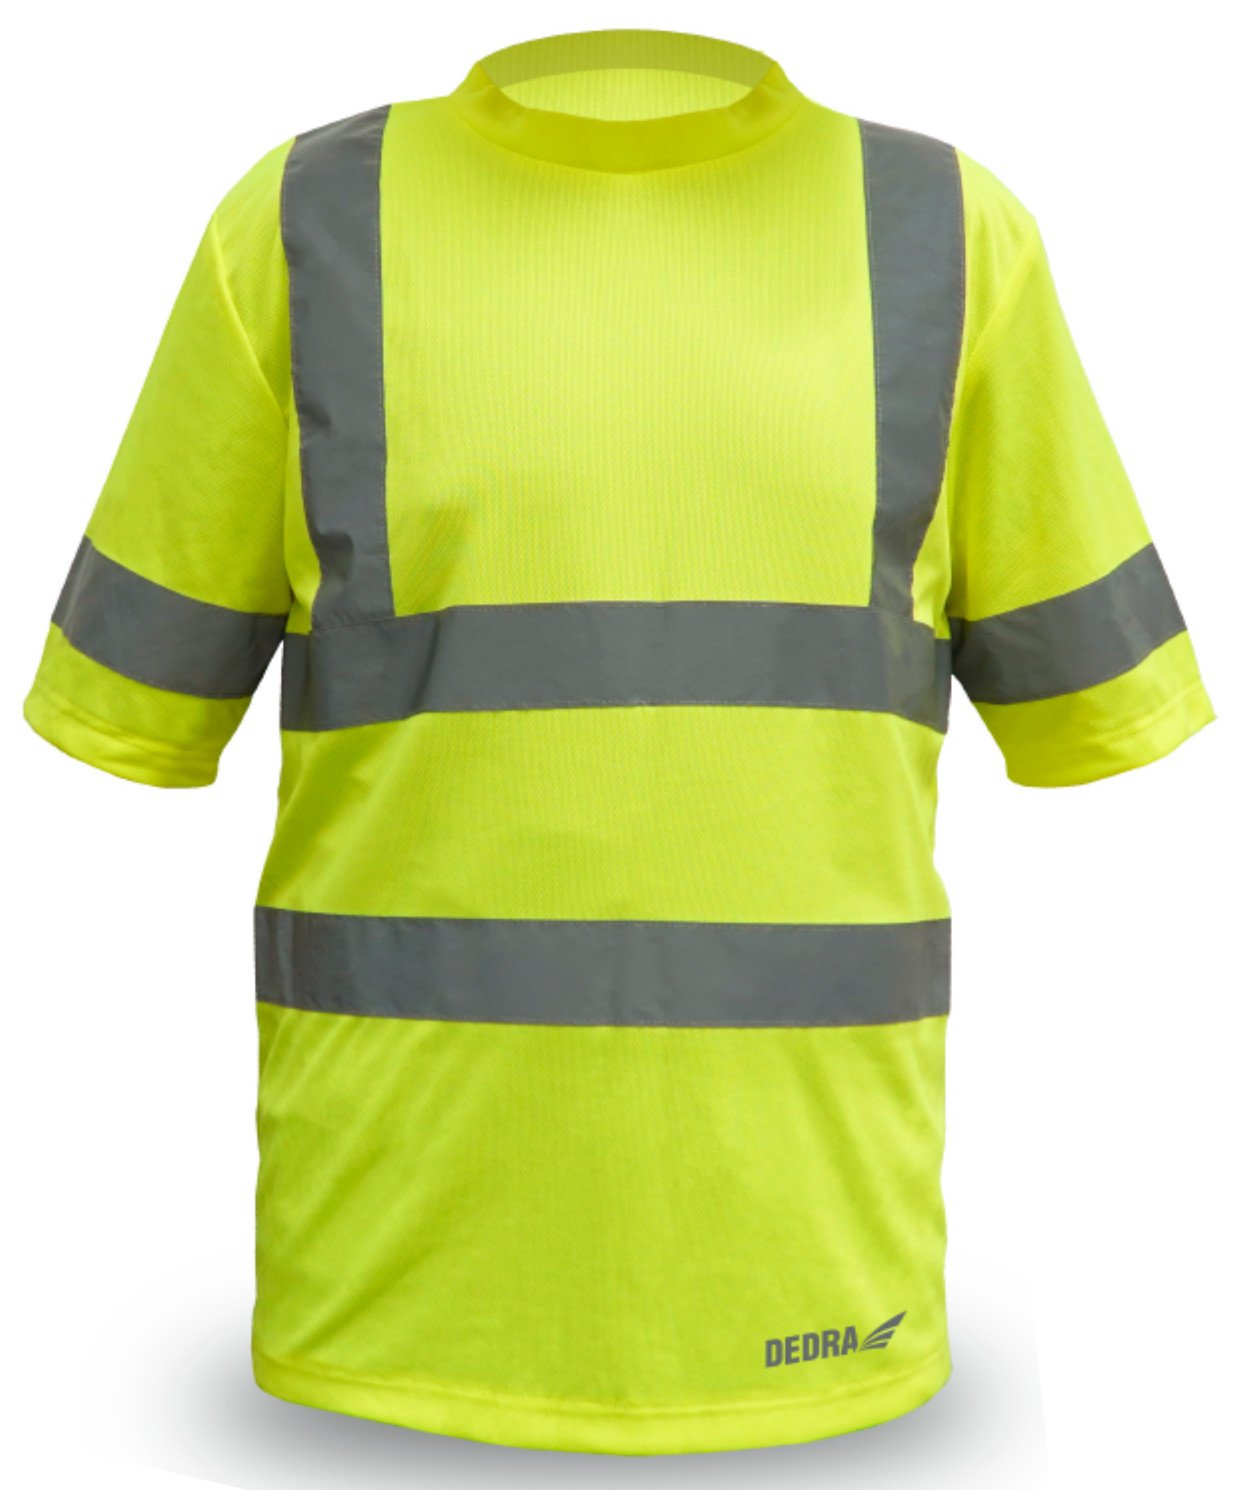 Pánské triko t-shirt reflexní, žluté velikost L DEDRA BH81T1-L